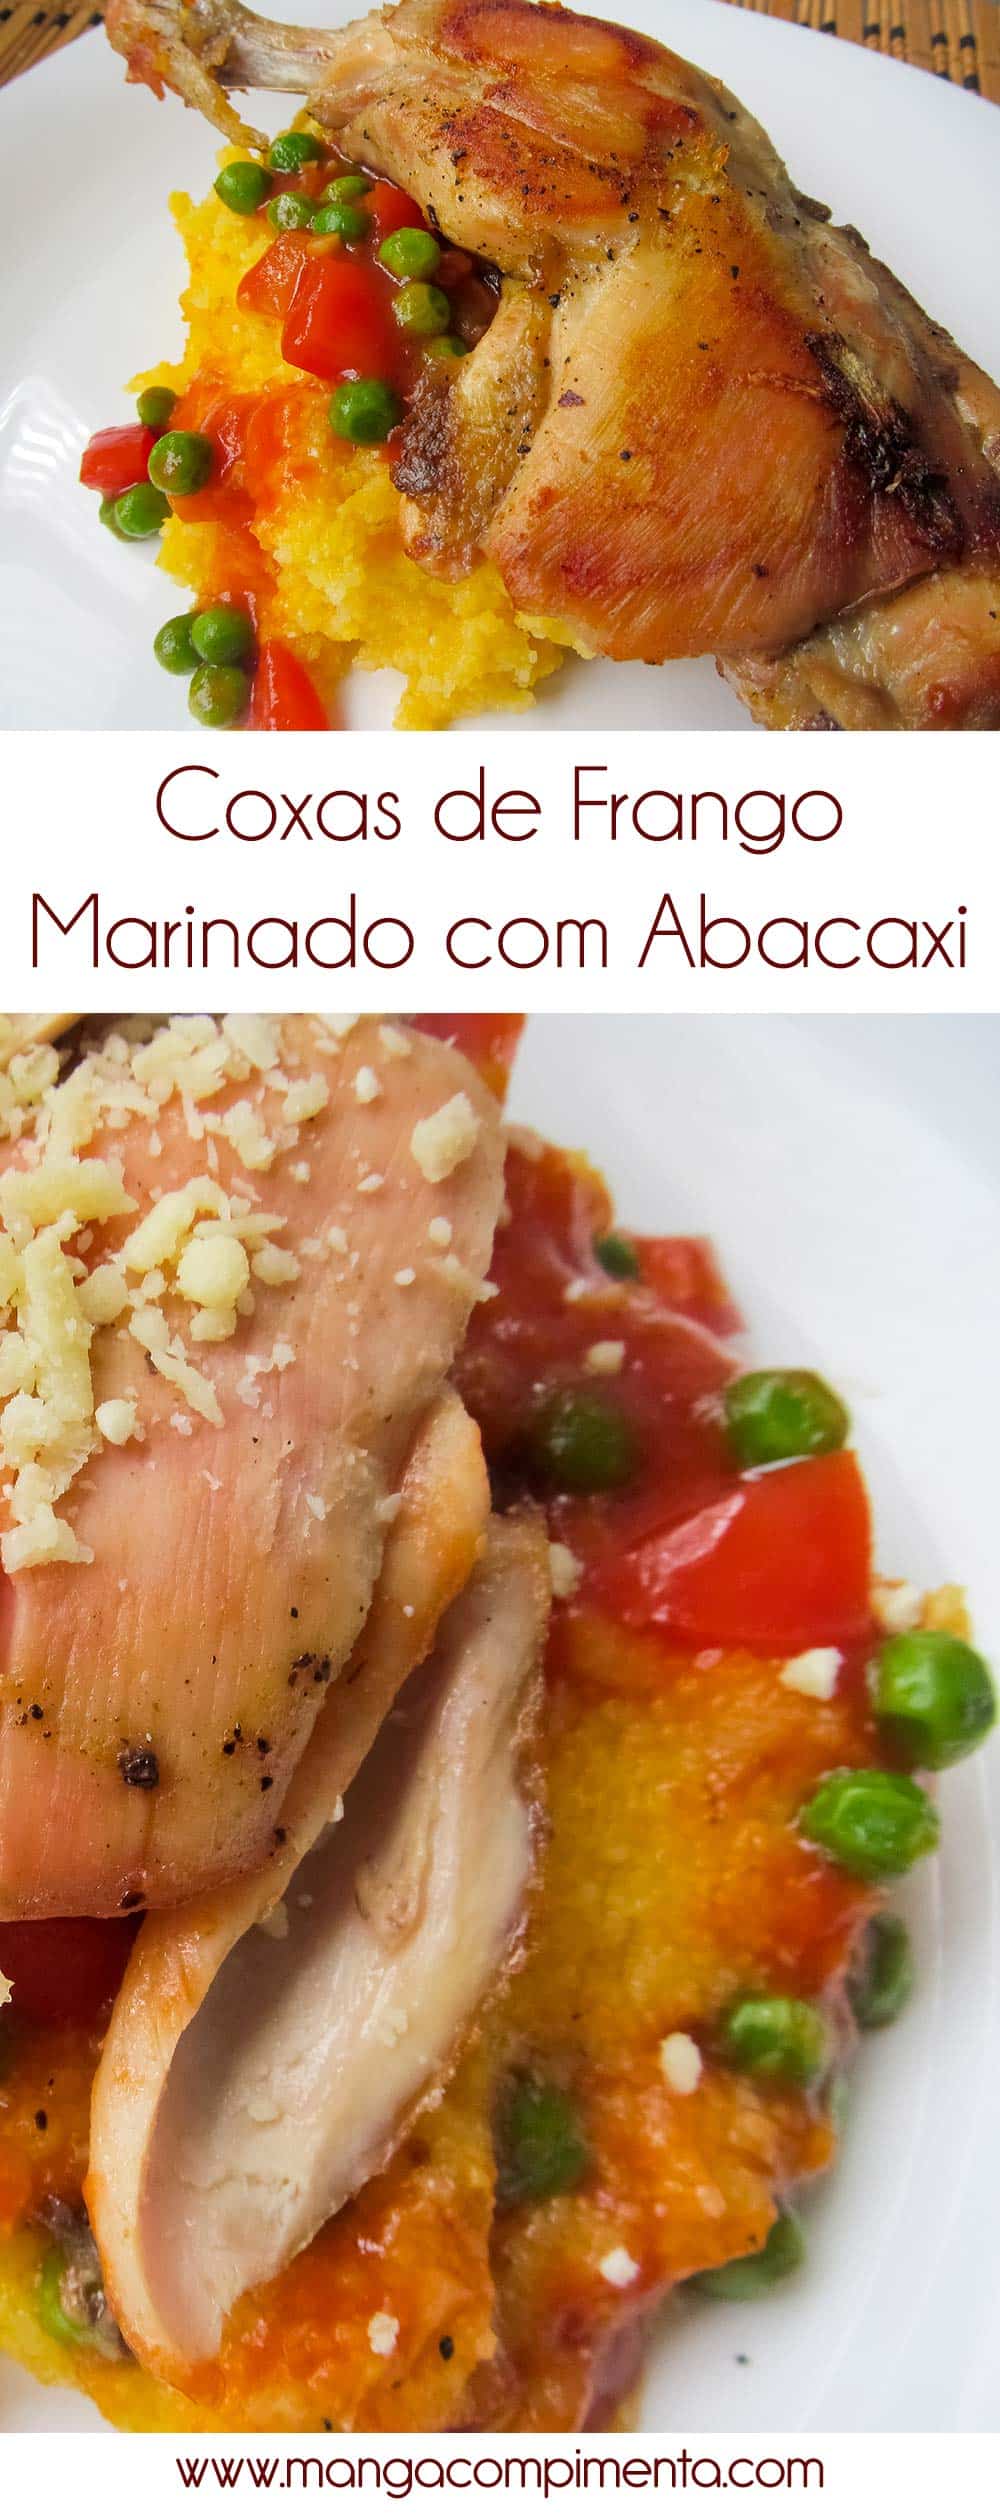 Coxas de Frango marinado com Abacaxi - para um almoço de final de semana!